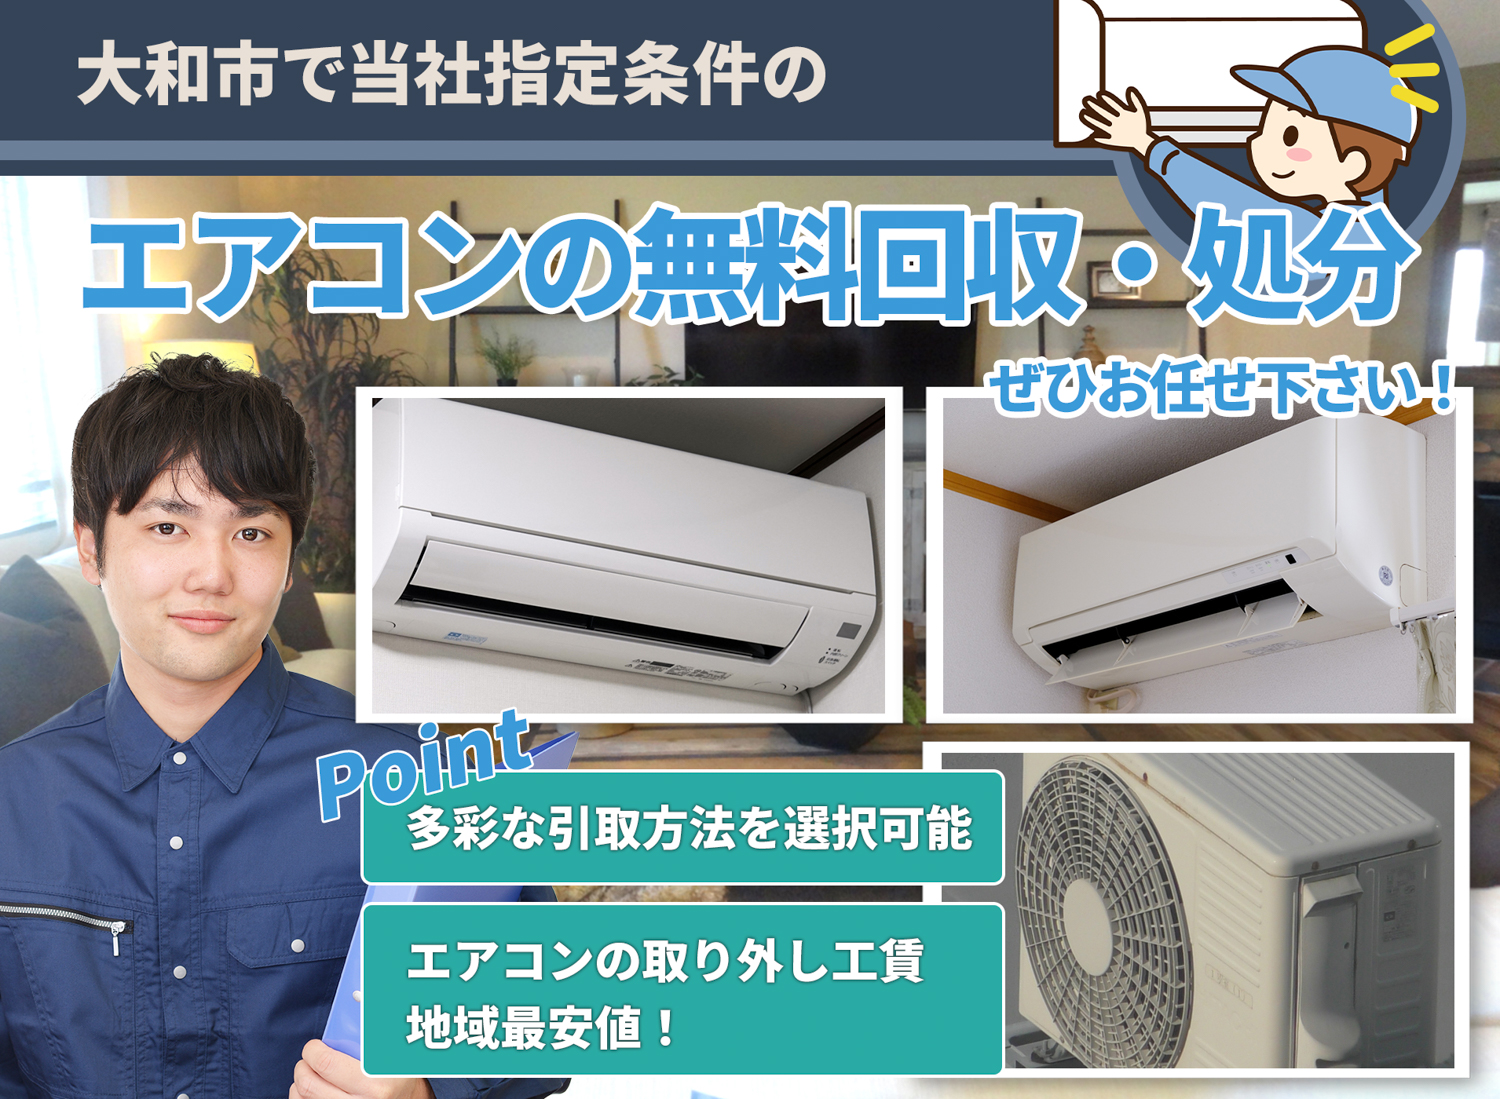 大和市のサービスで地域一番を目指すエアコン無料回収処分隊のエアコン無料回収サービス